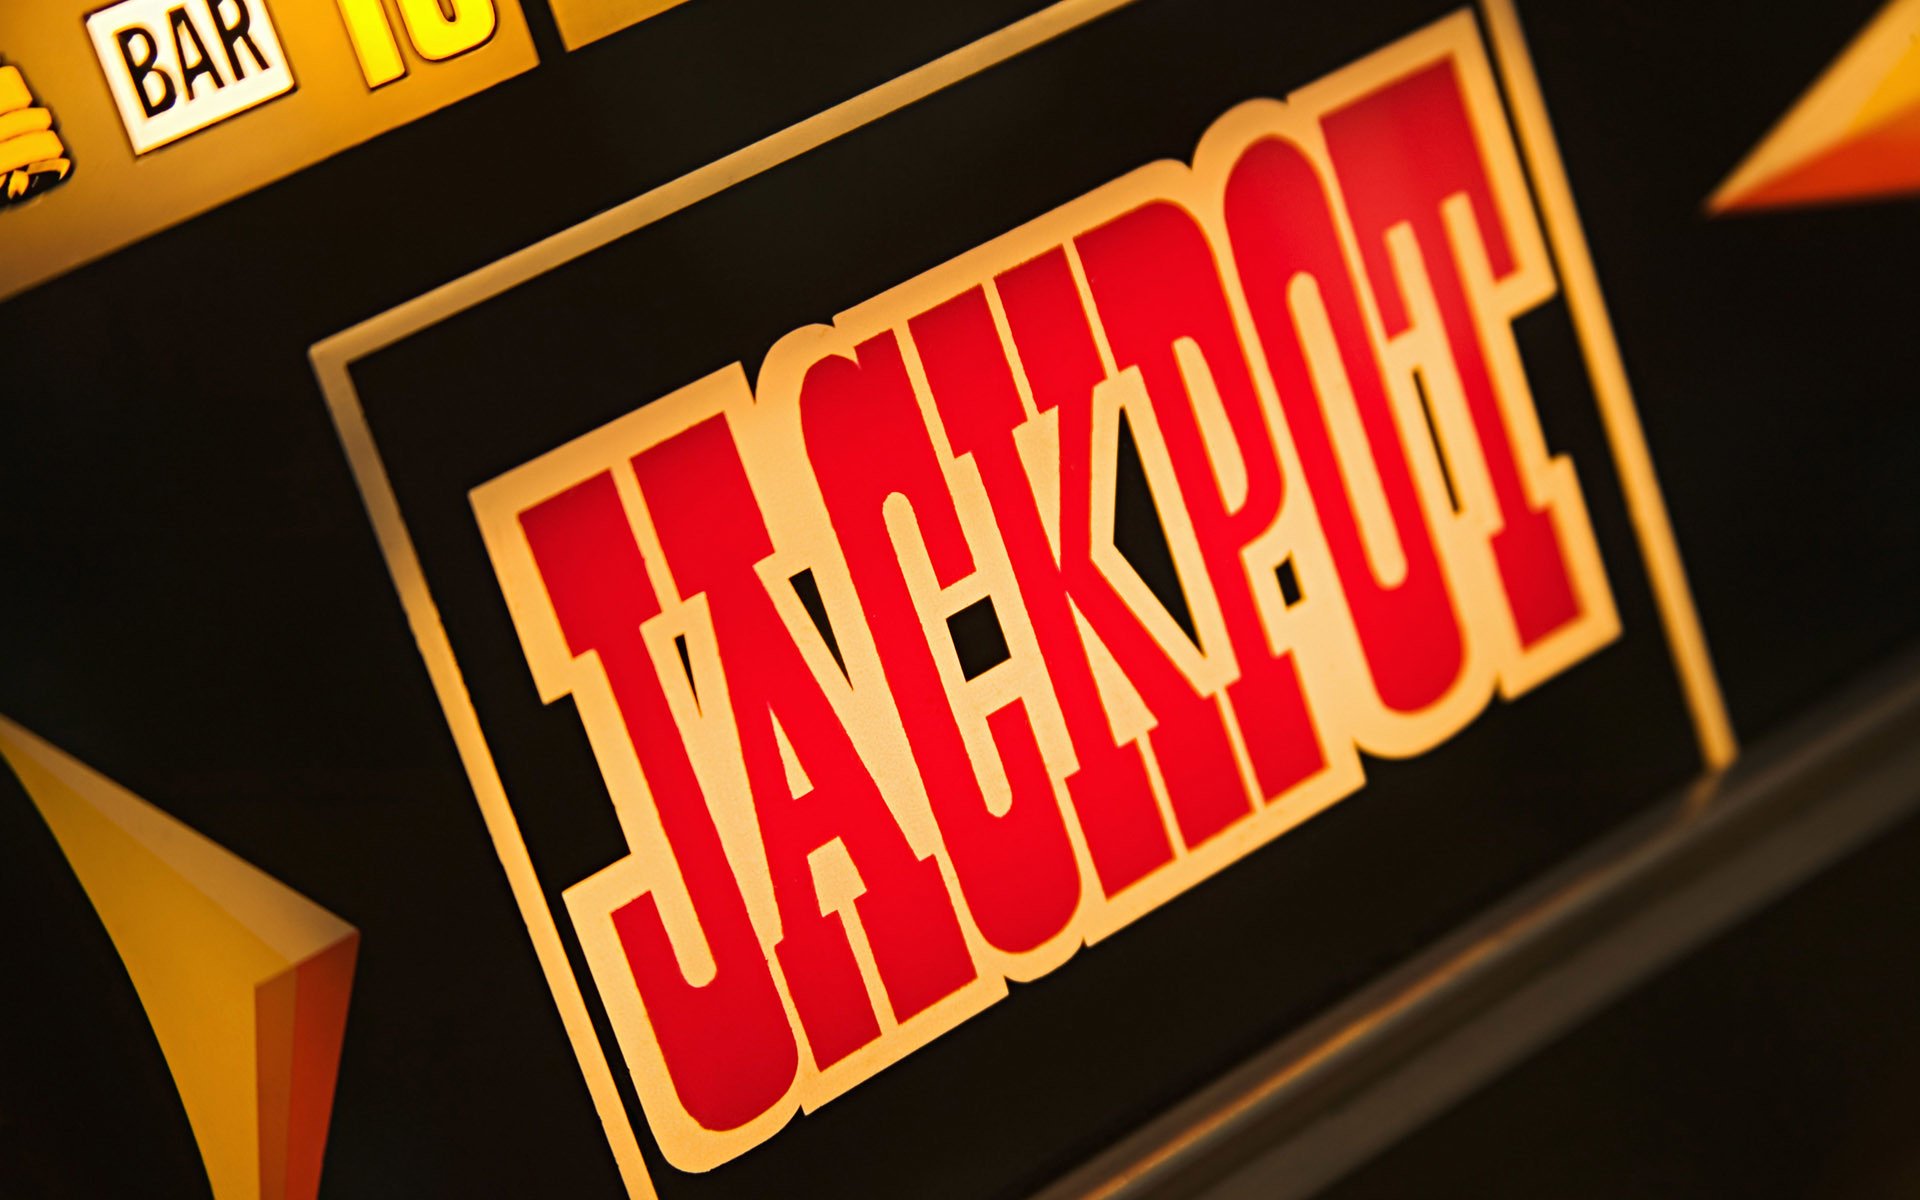 Jackpot-Schriftzug auf Spielautomat